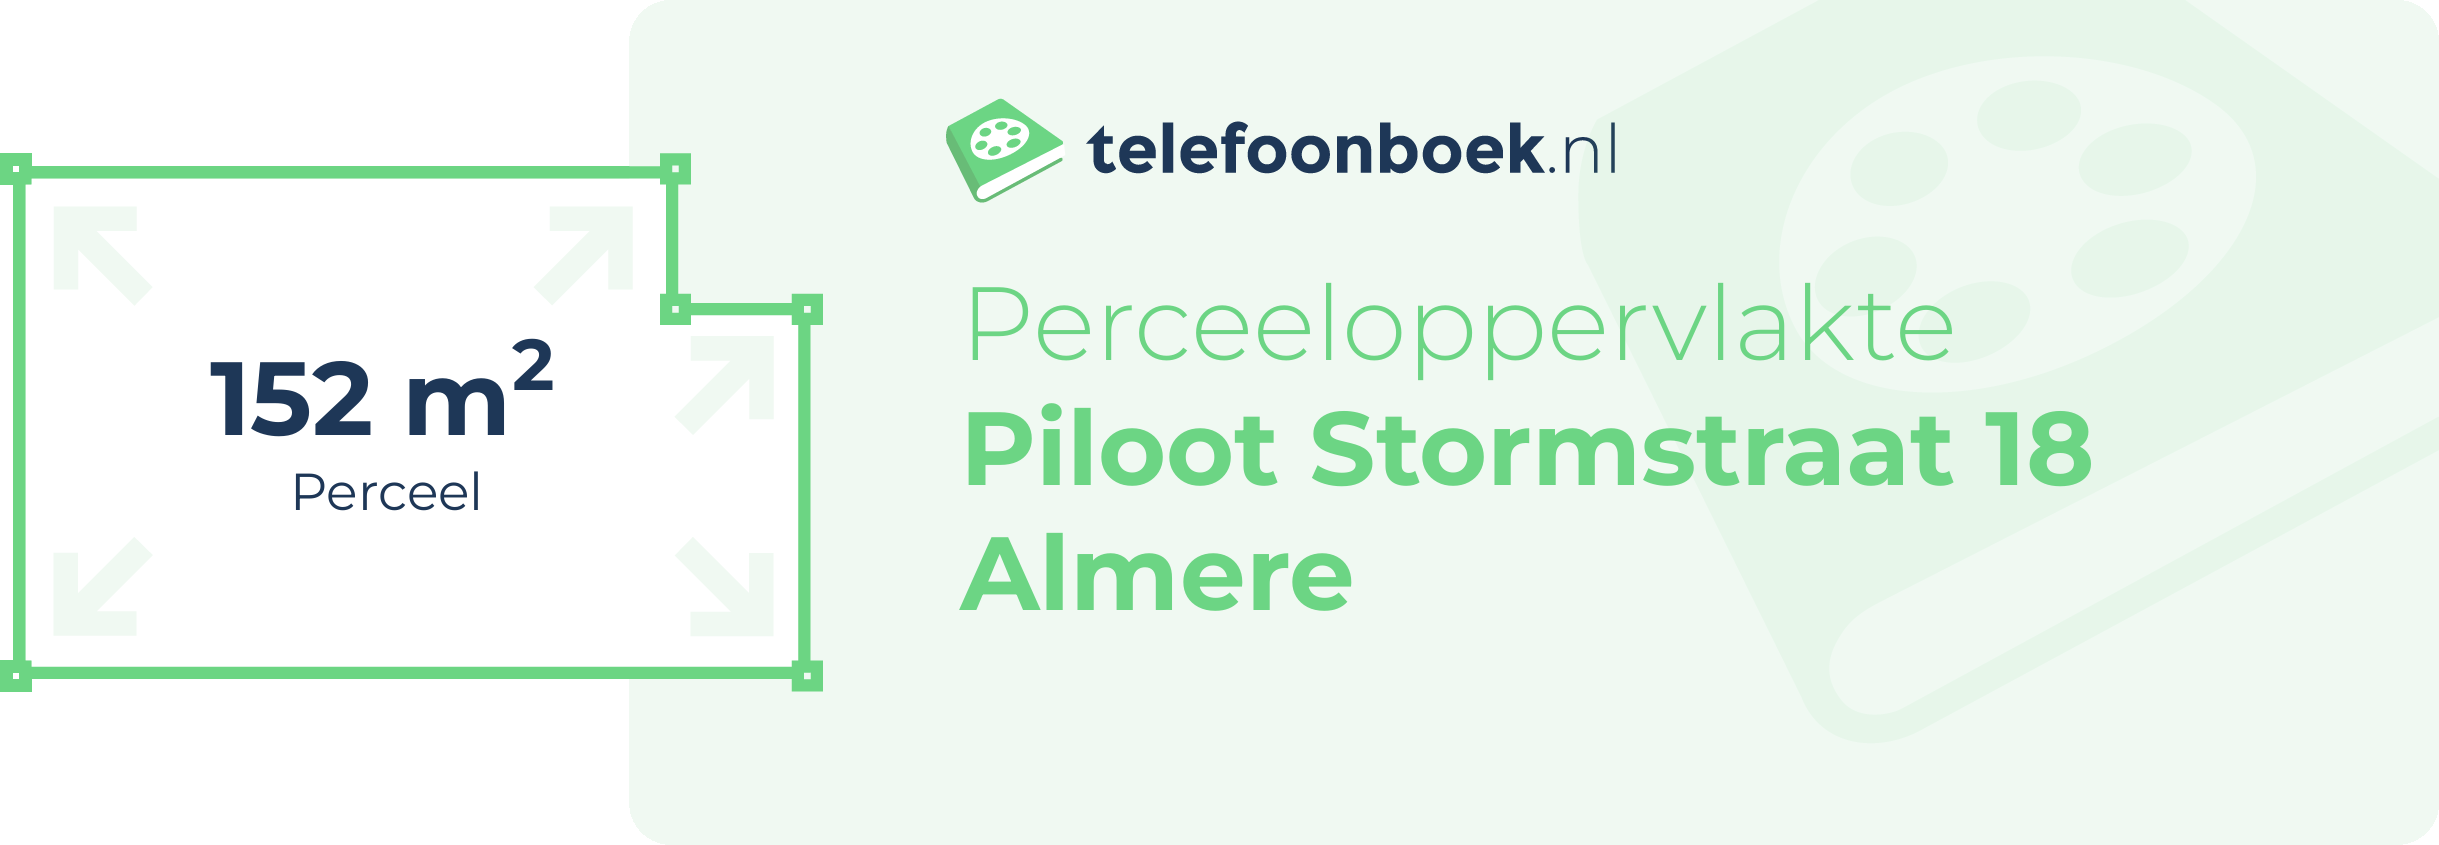 Perceeloppervlakte Piloot Stormstraat 18 Almere